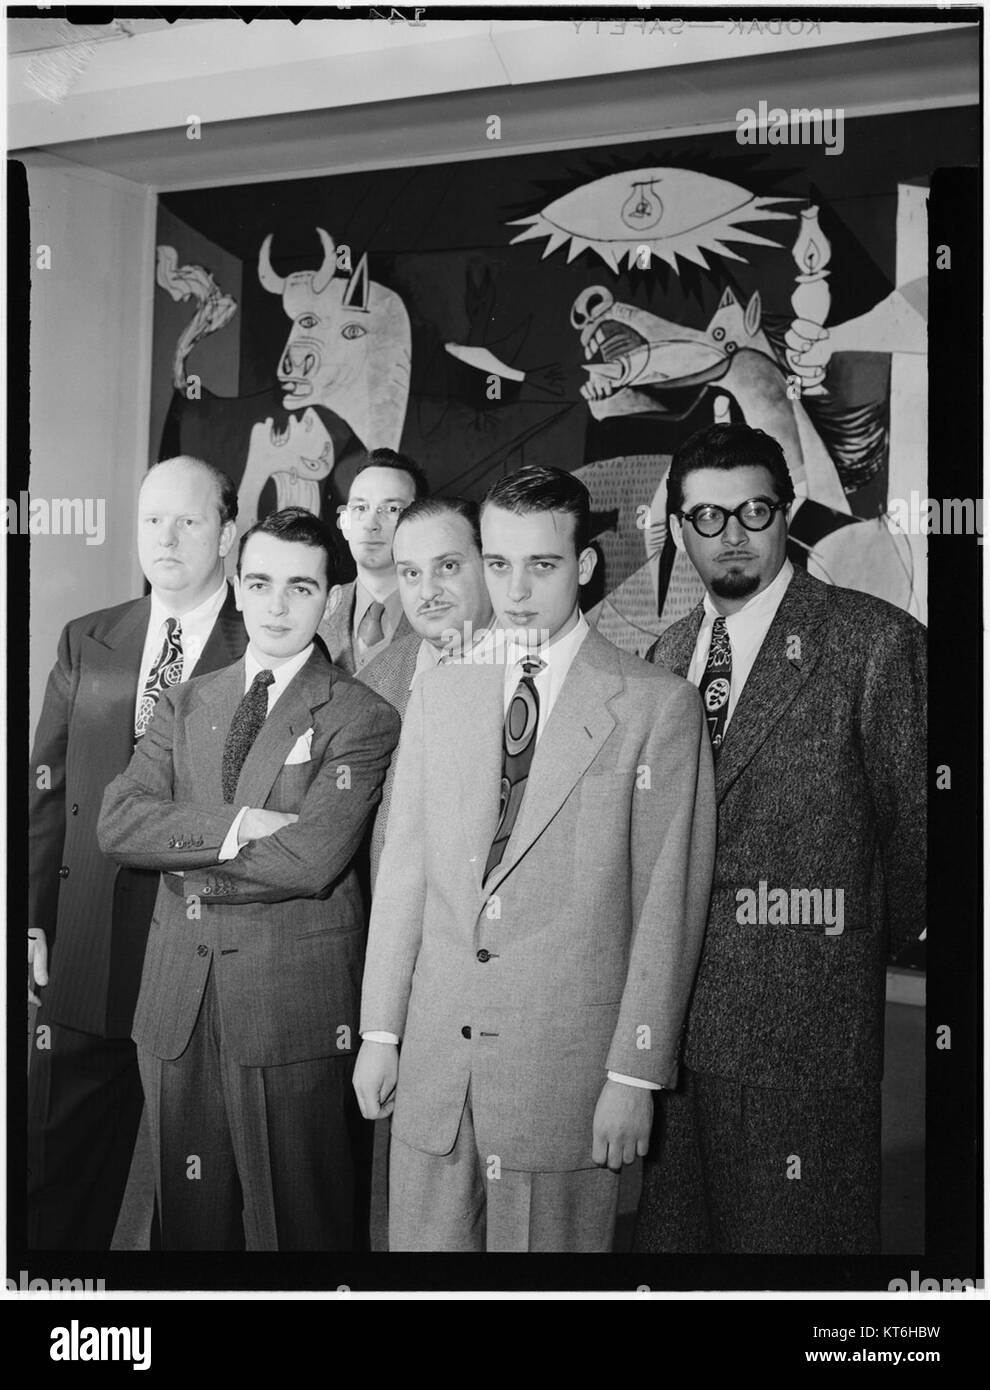 (Retrato de Edwin A. Finckel, Ralph Burns, Eddie Sauter, Johnny Richards, Neal Hefti y George Handy, Museo de Arte Moderno de Nueva York, N.Y., ca. De marzo de 1947) (5189935102) Foto de stock